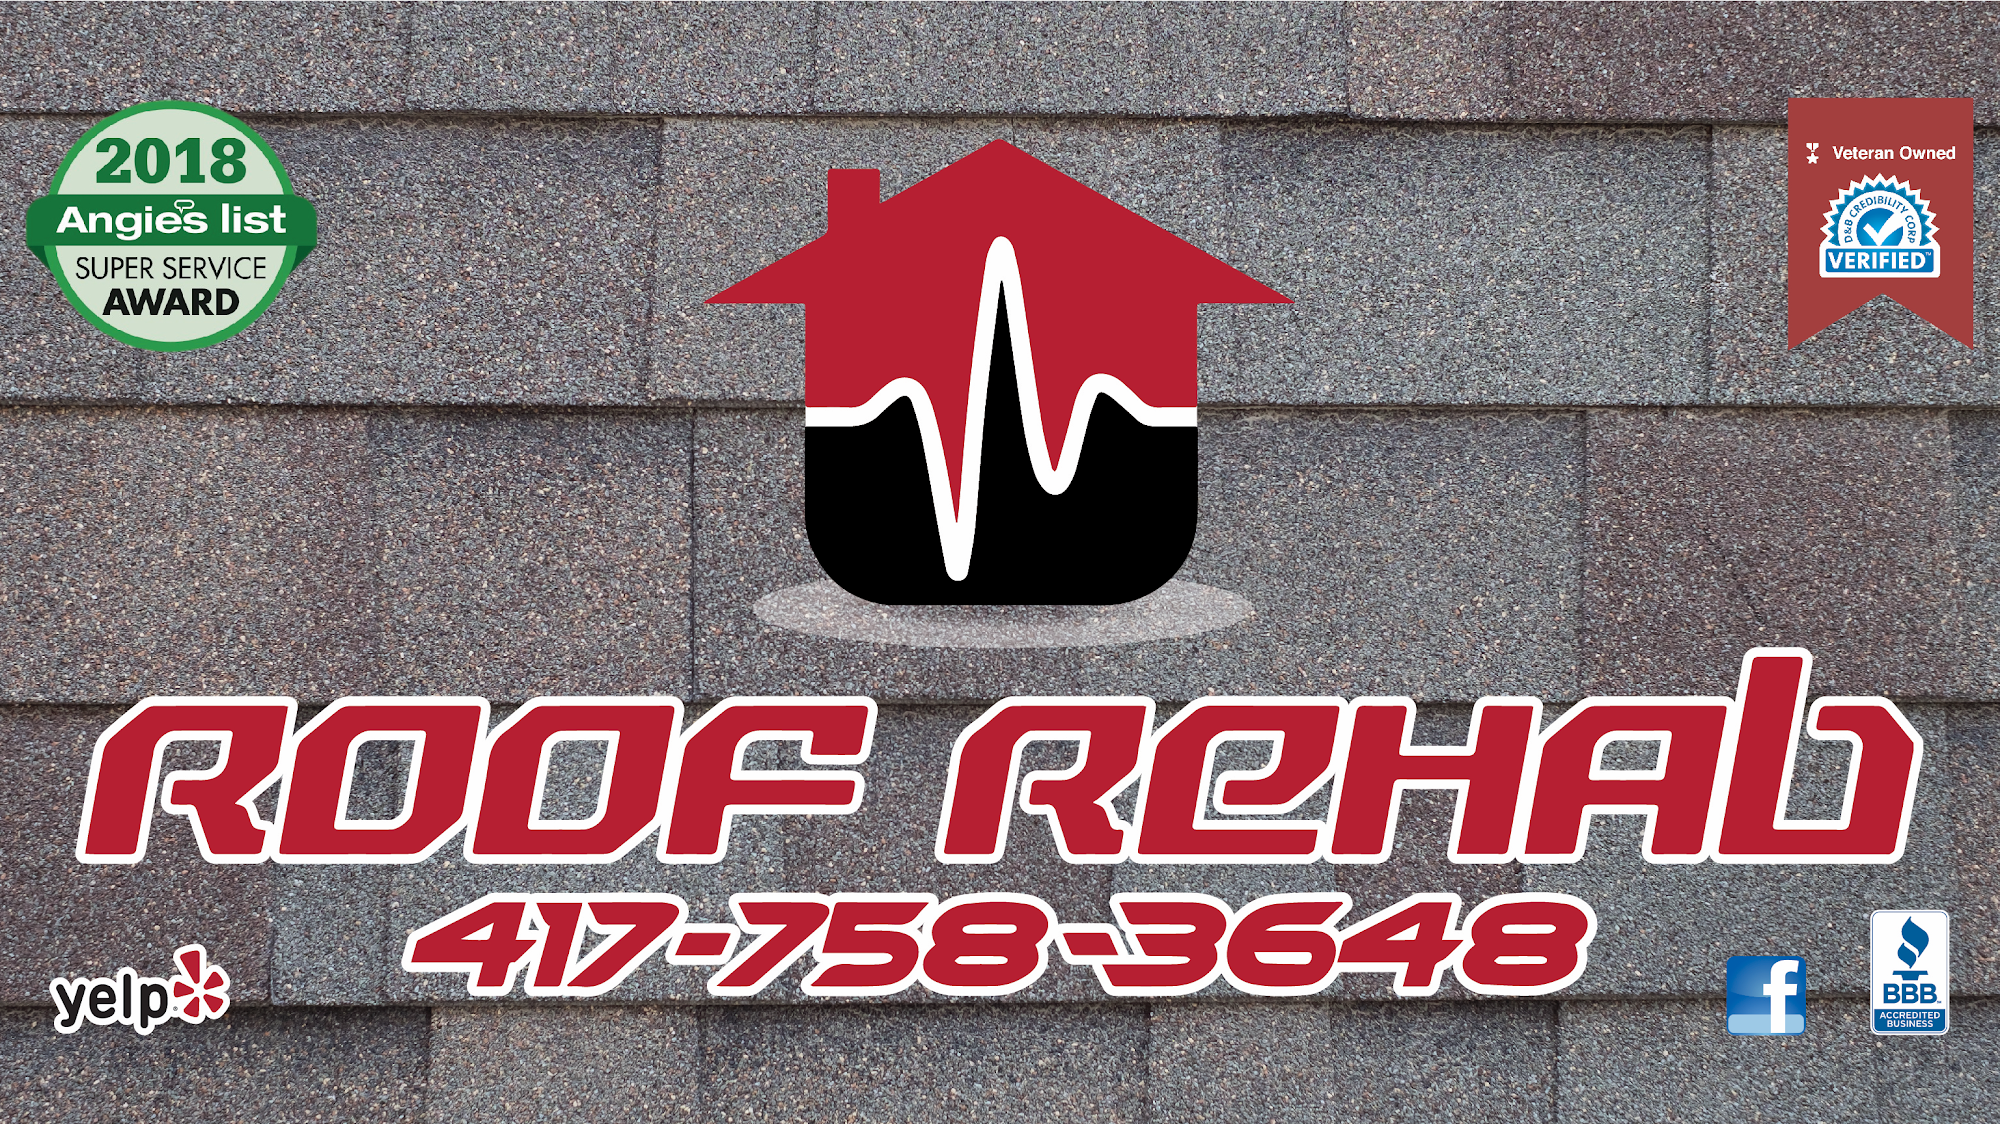 Roof Rehab